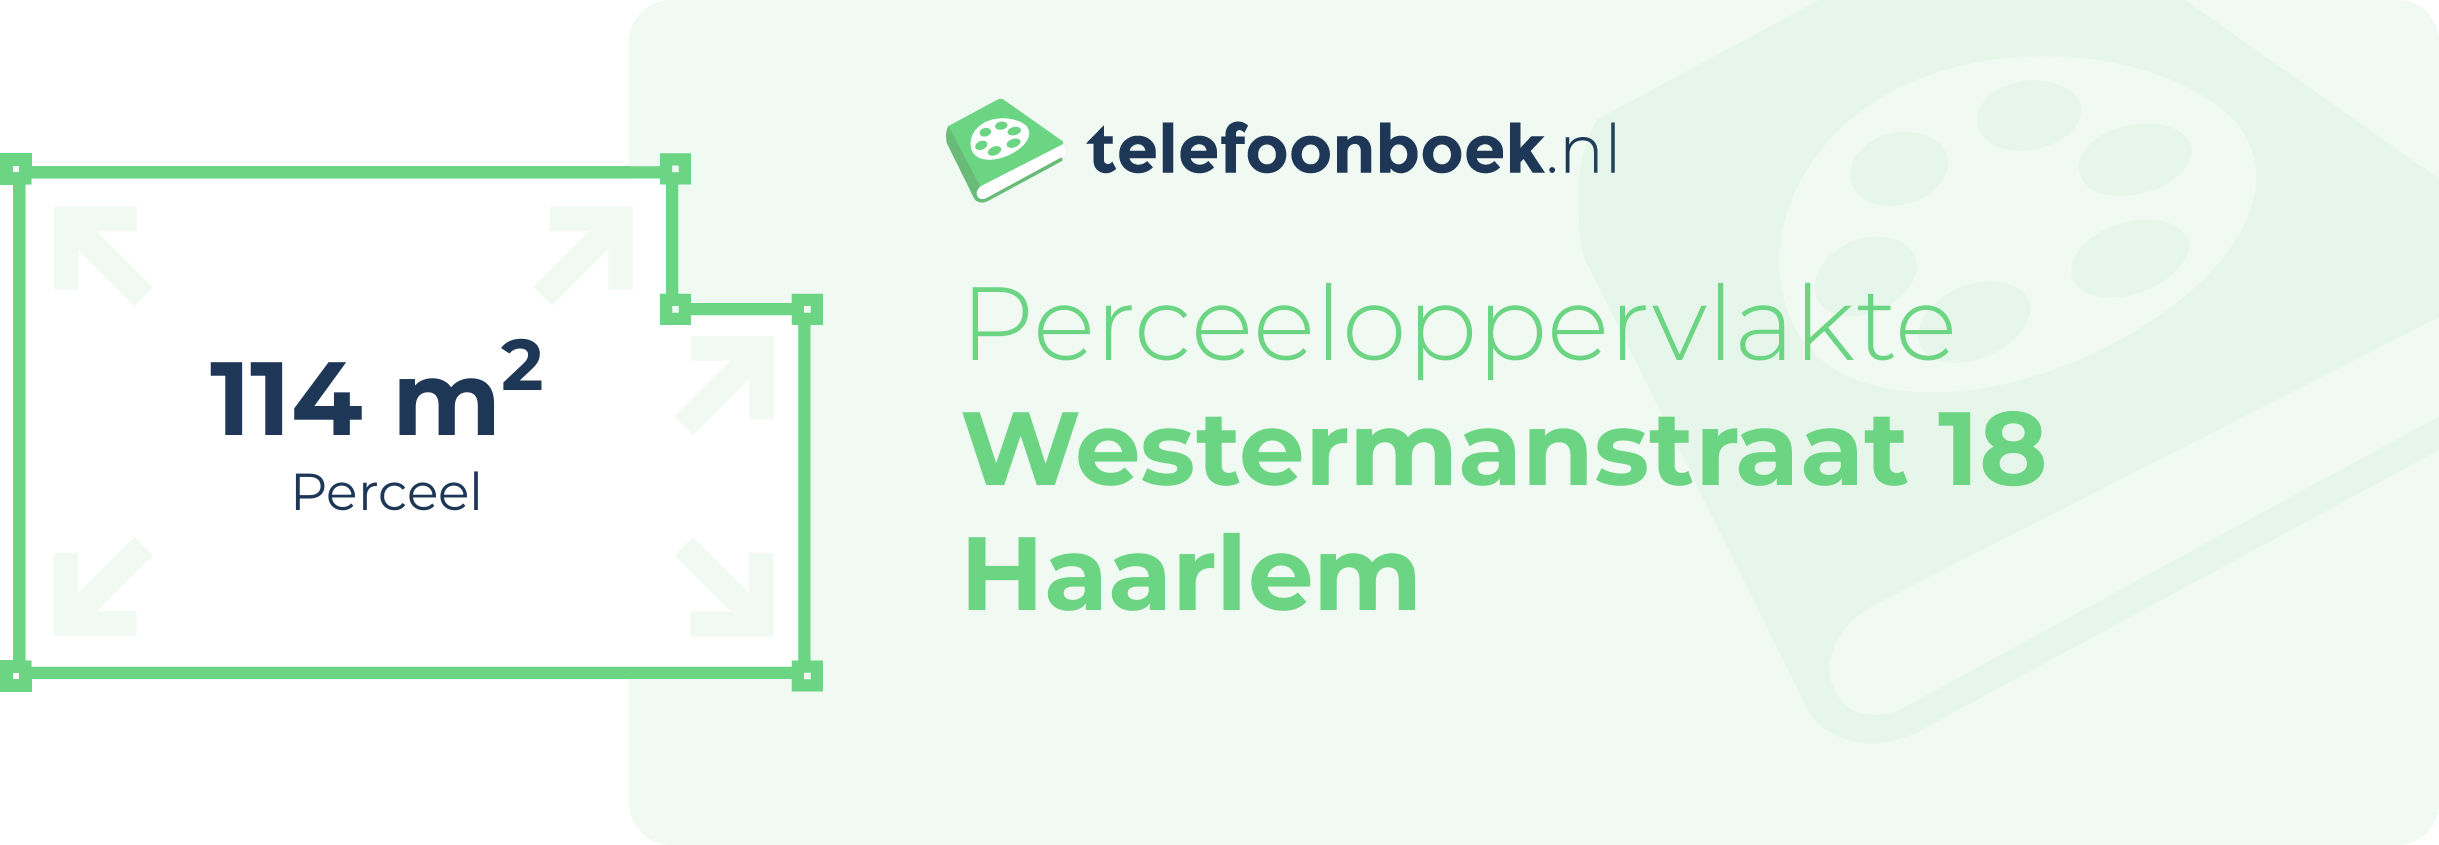 Perceeloppervlakte Westermanstraat 18 Haarlem